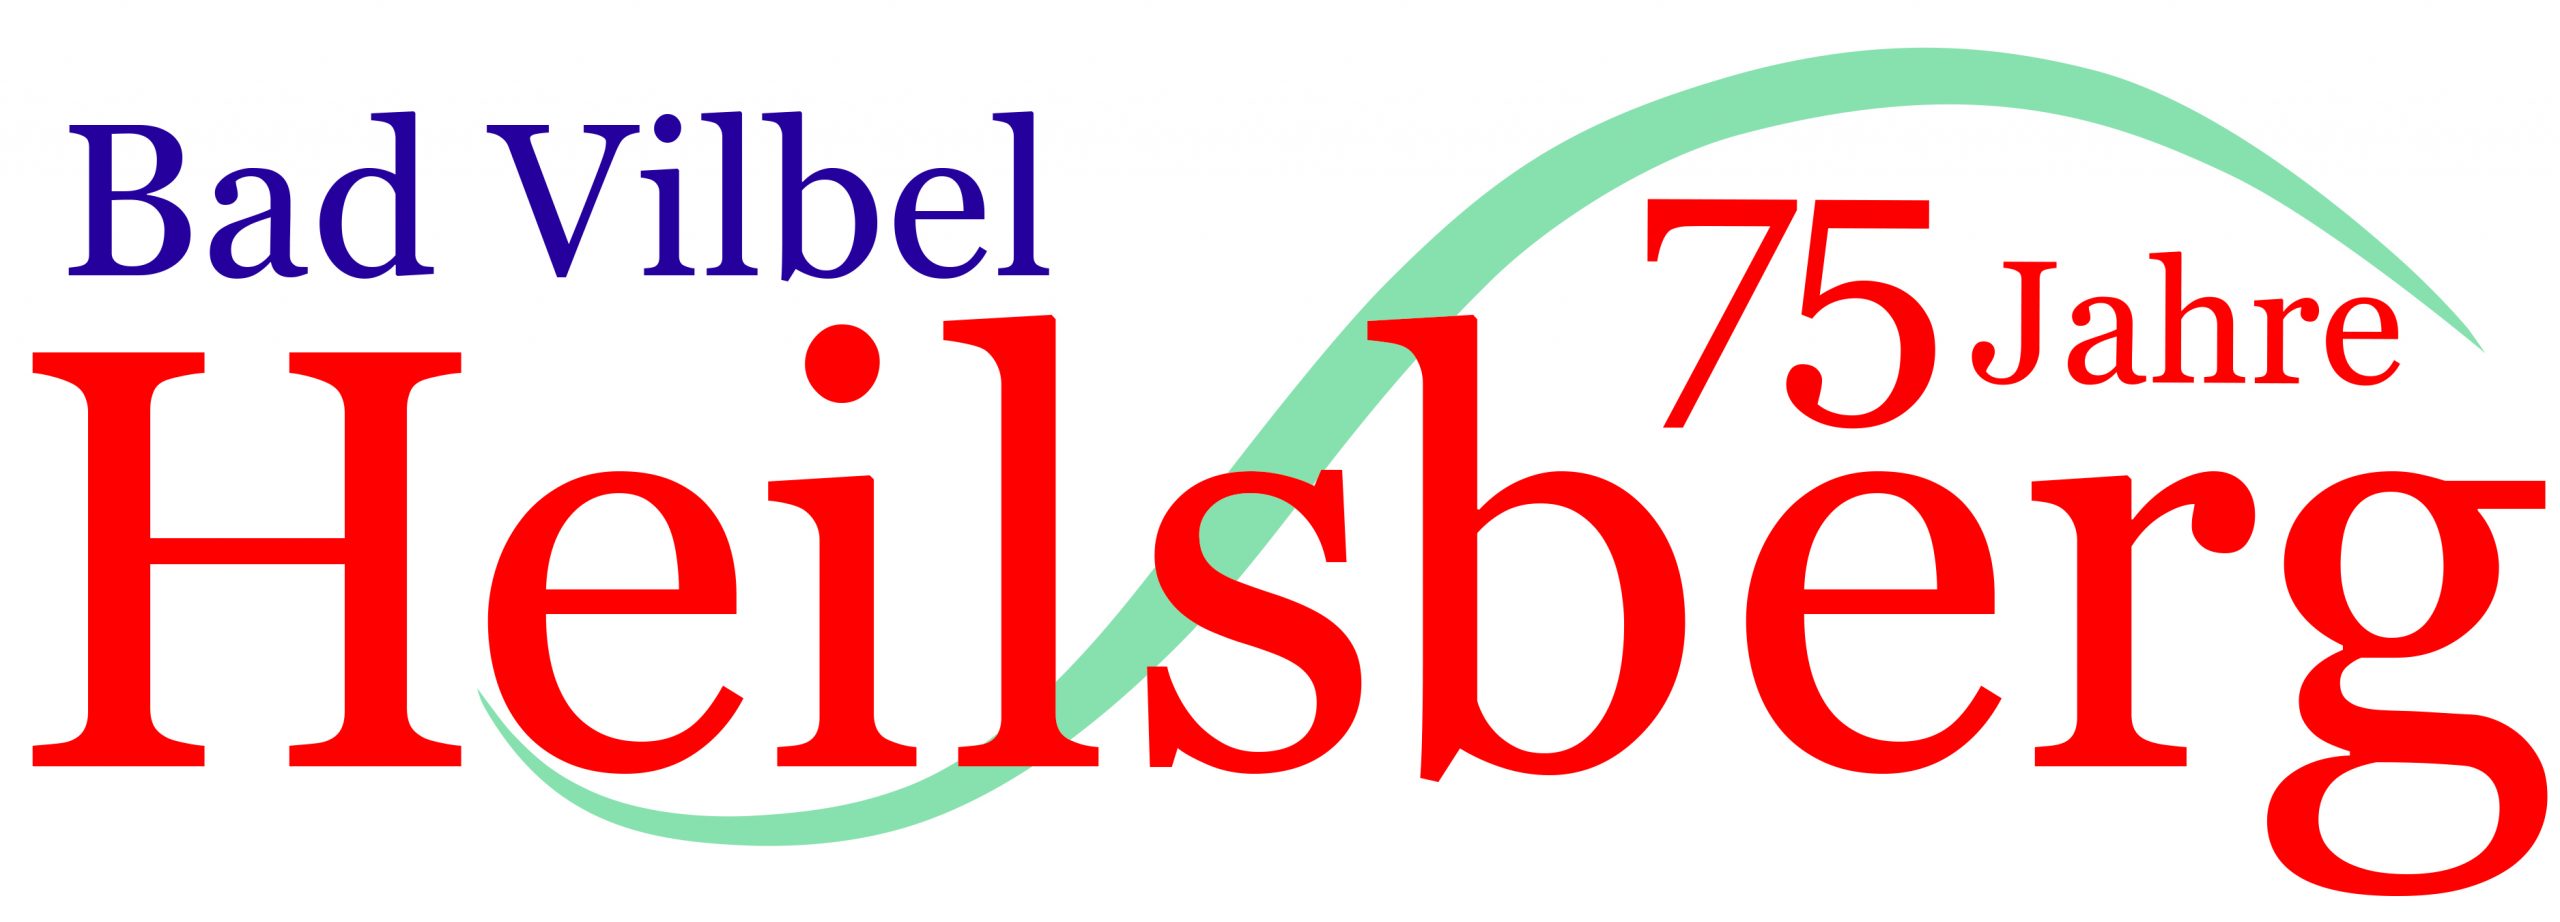 Wir feiern 75 Jahre Bad Vilbel Heilsberg!